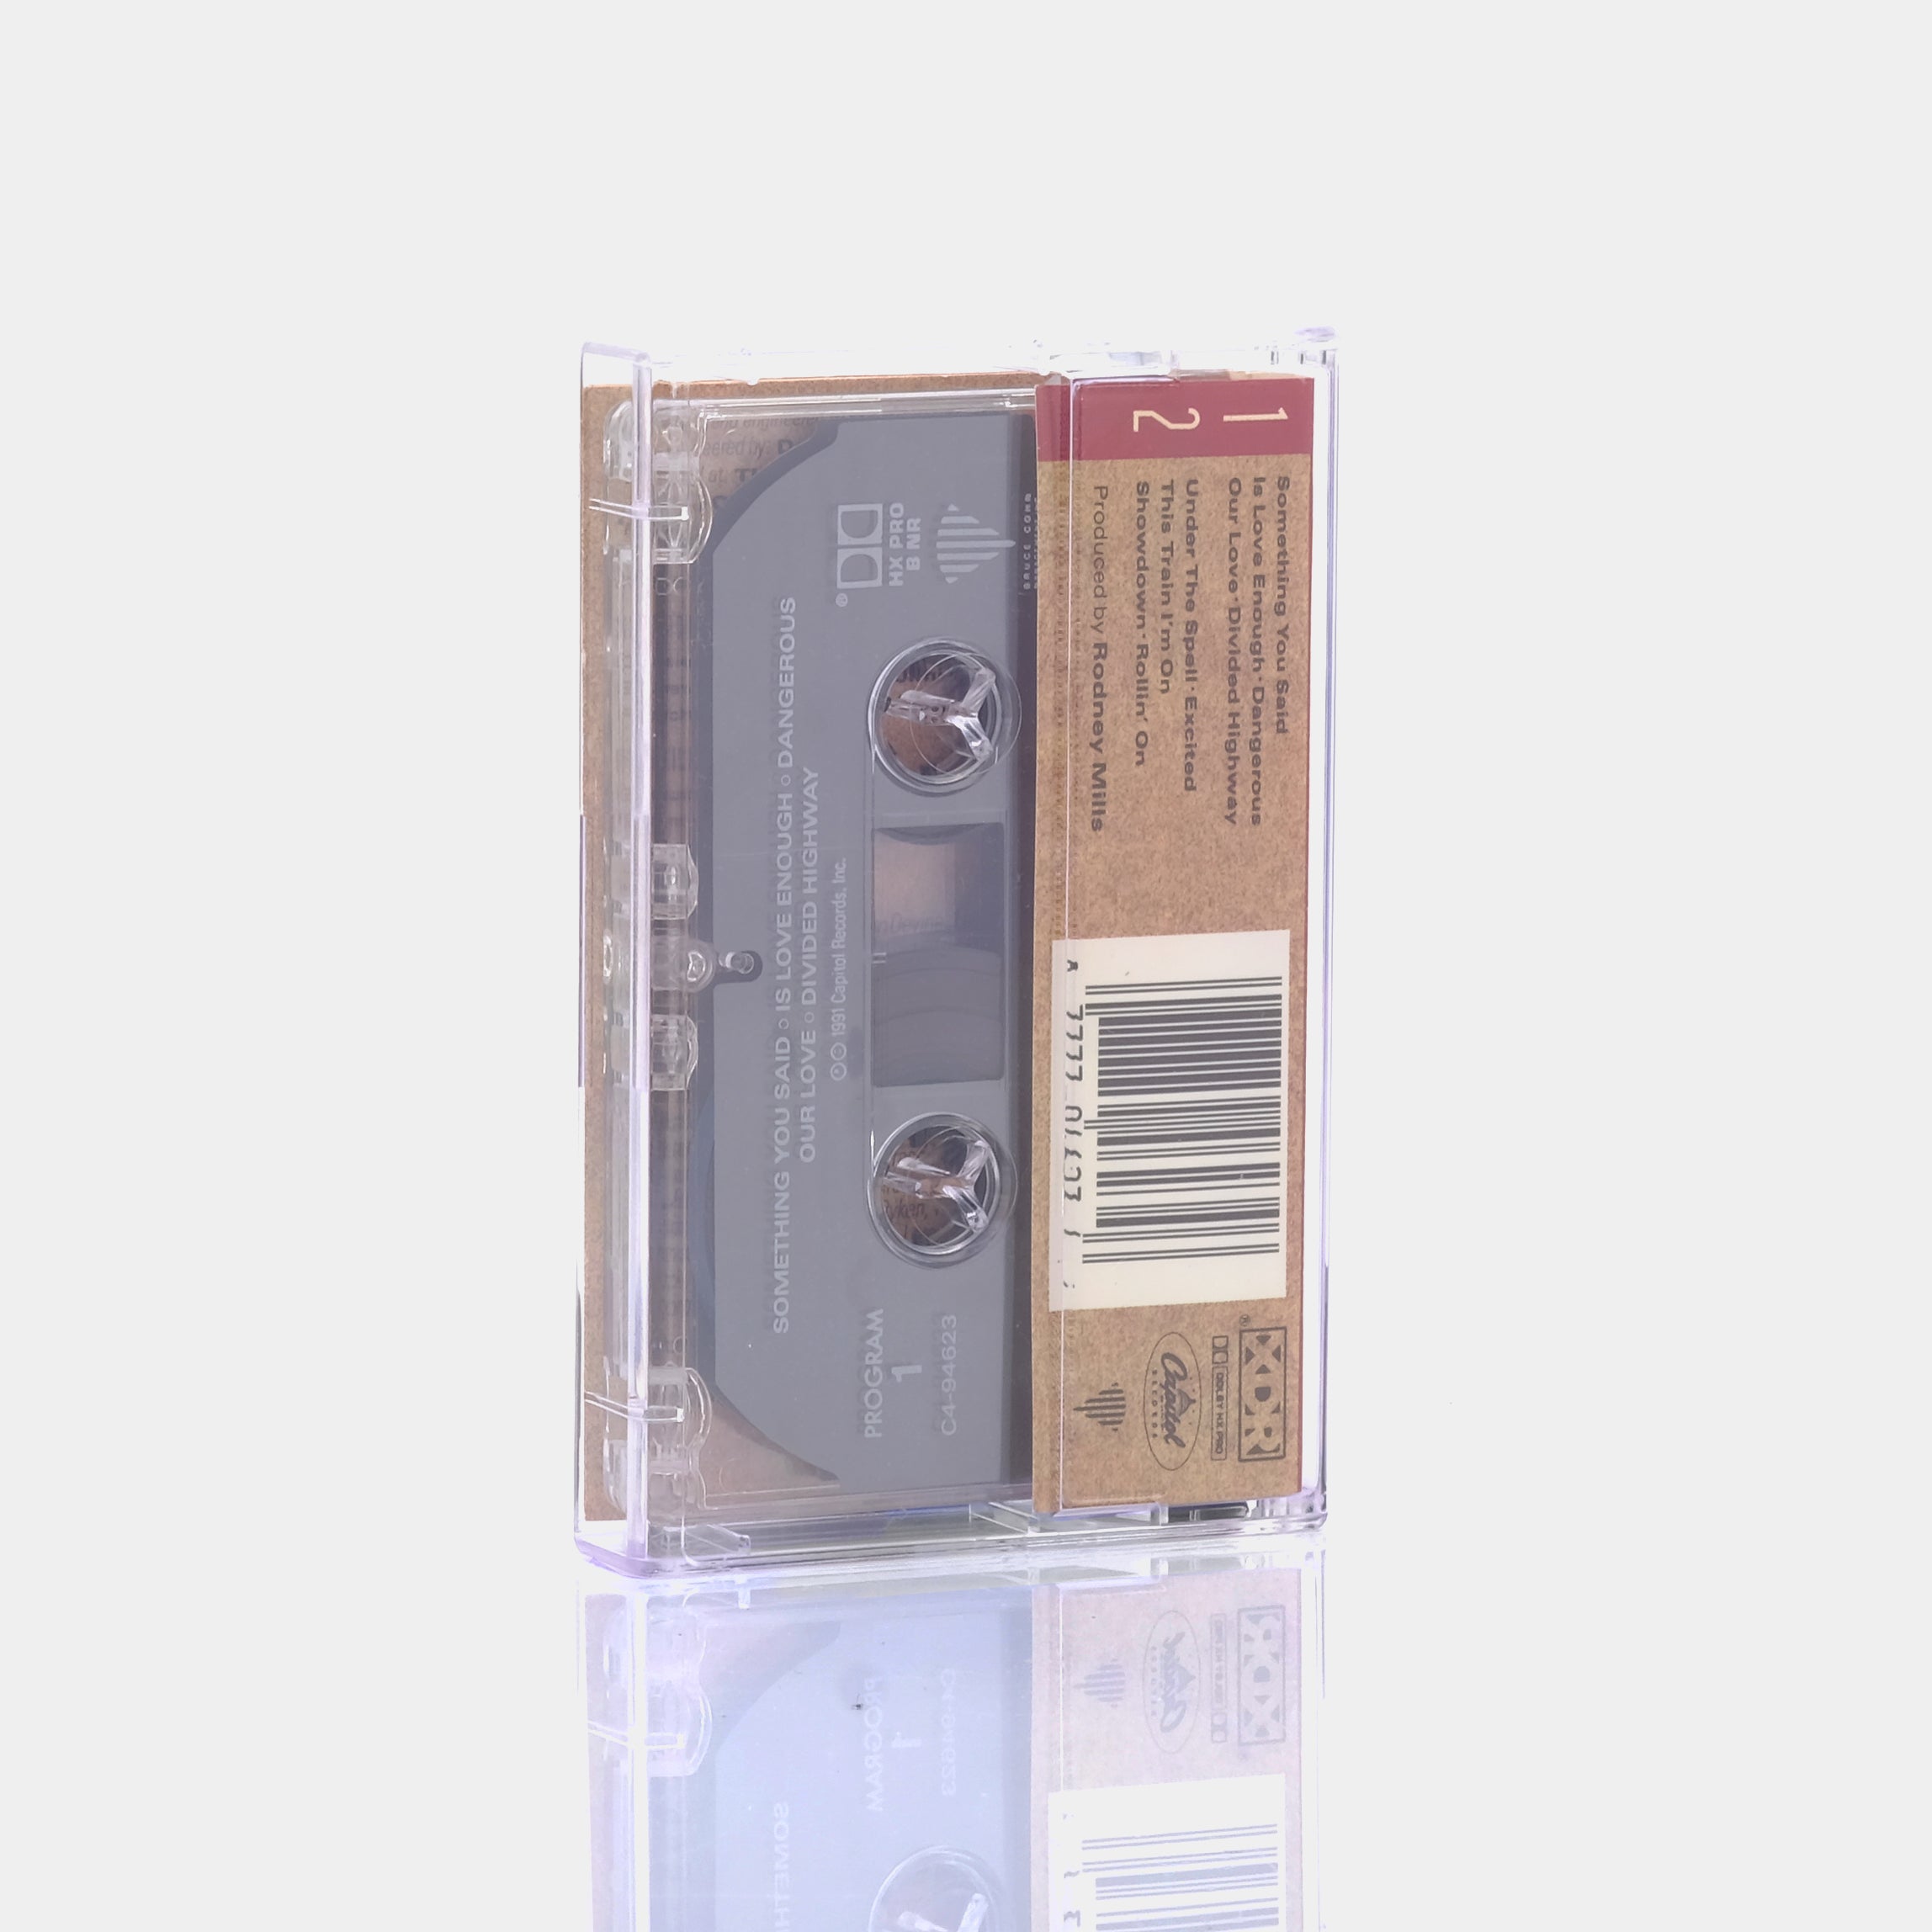 The Doobie Brothers - Brotherhood Cassette Tape